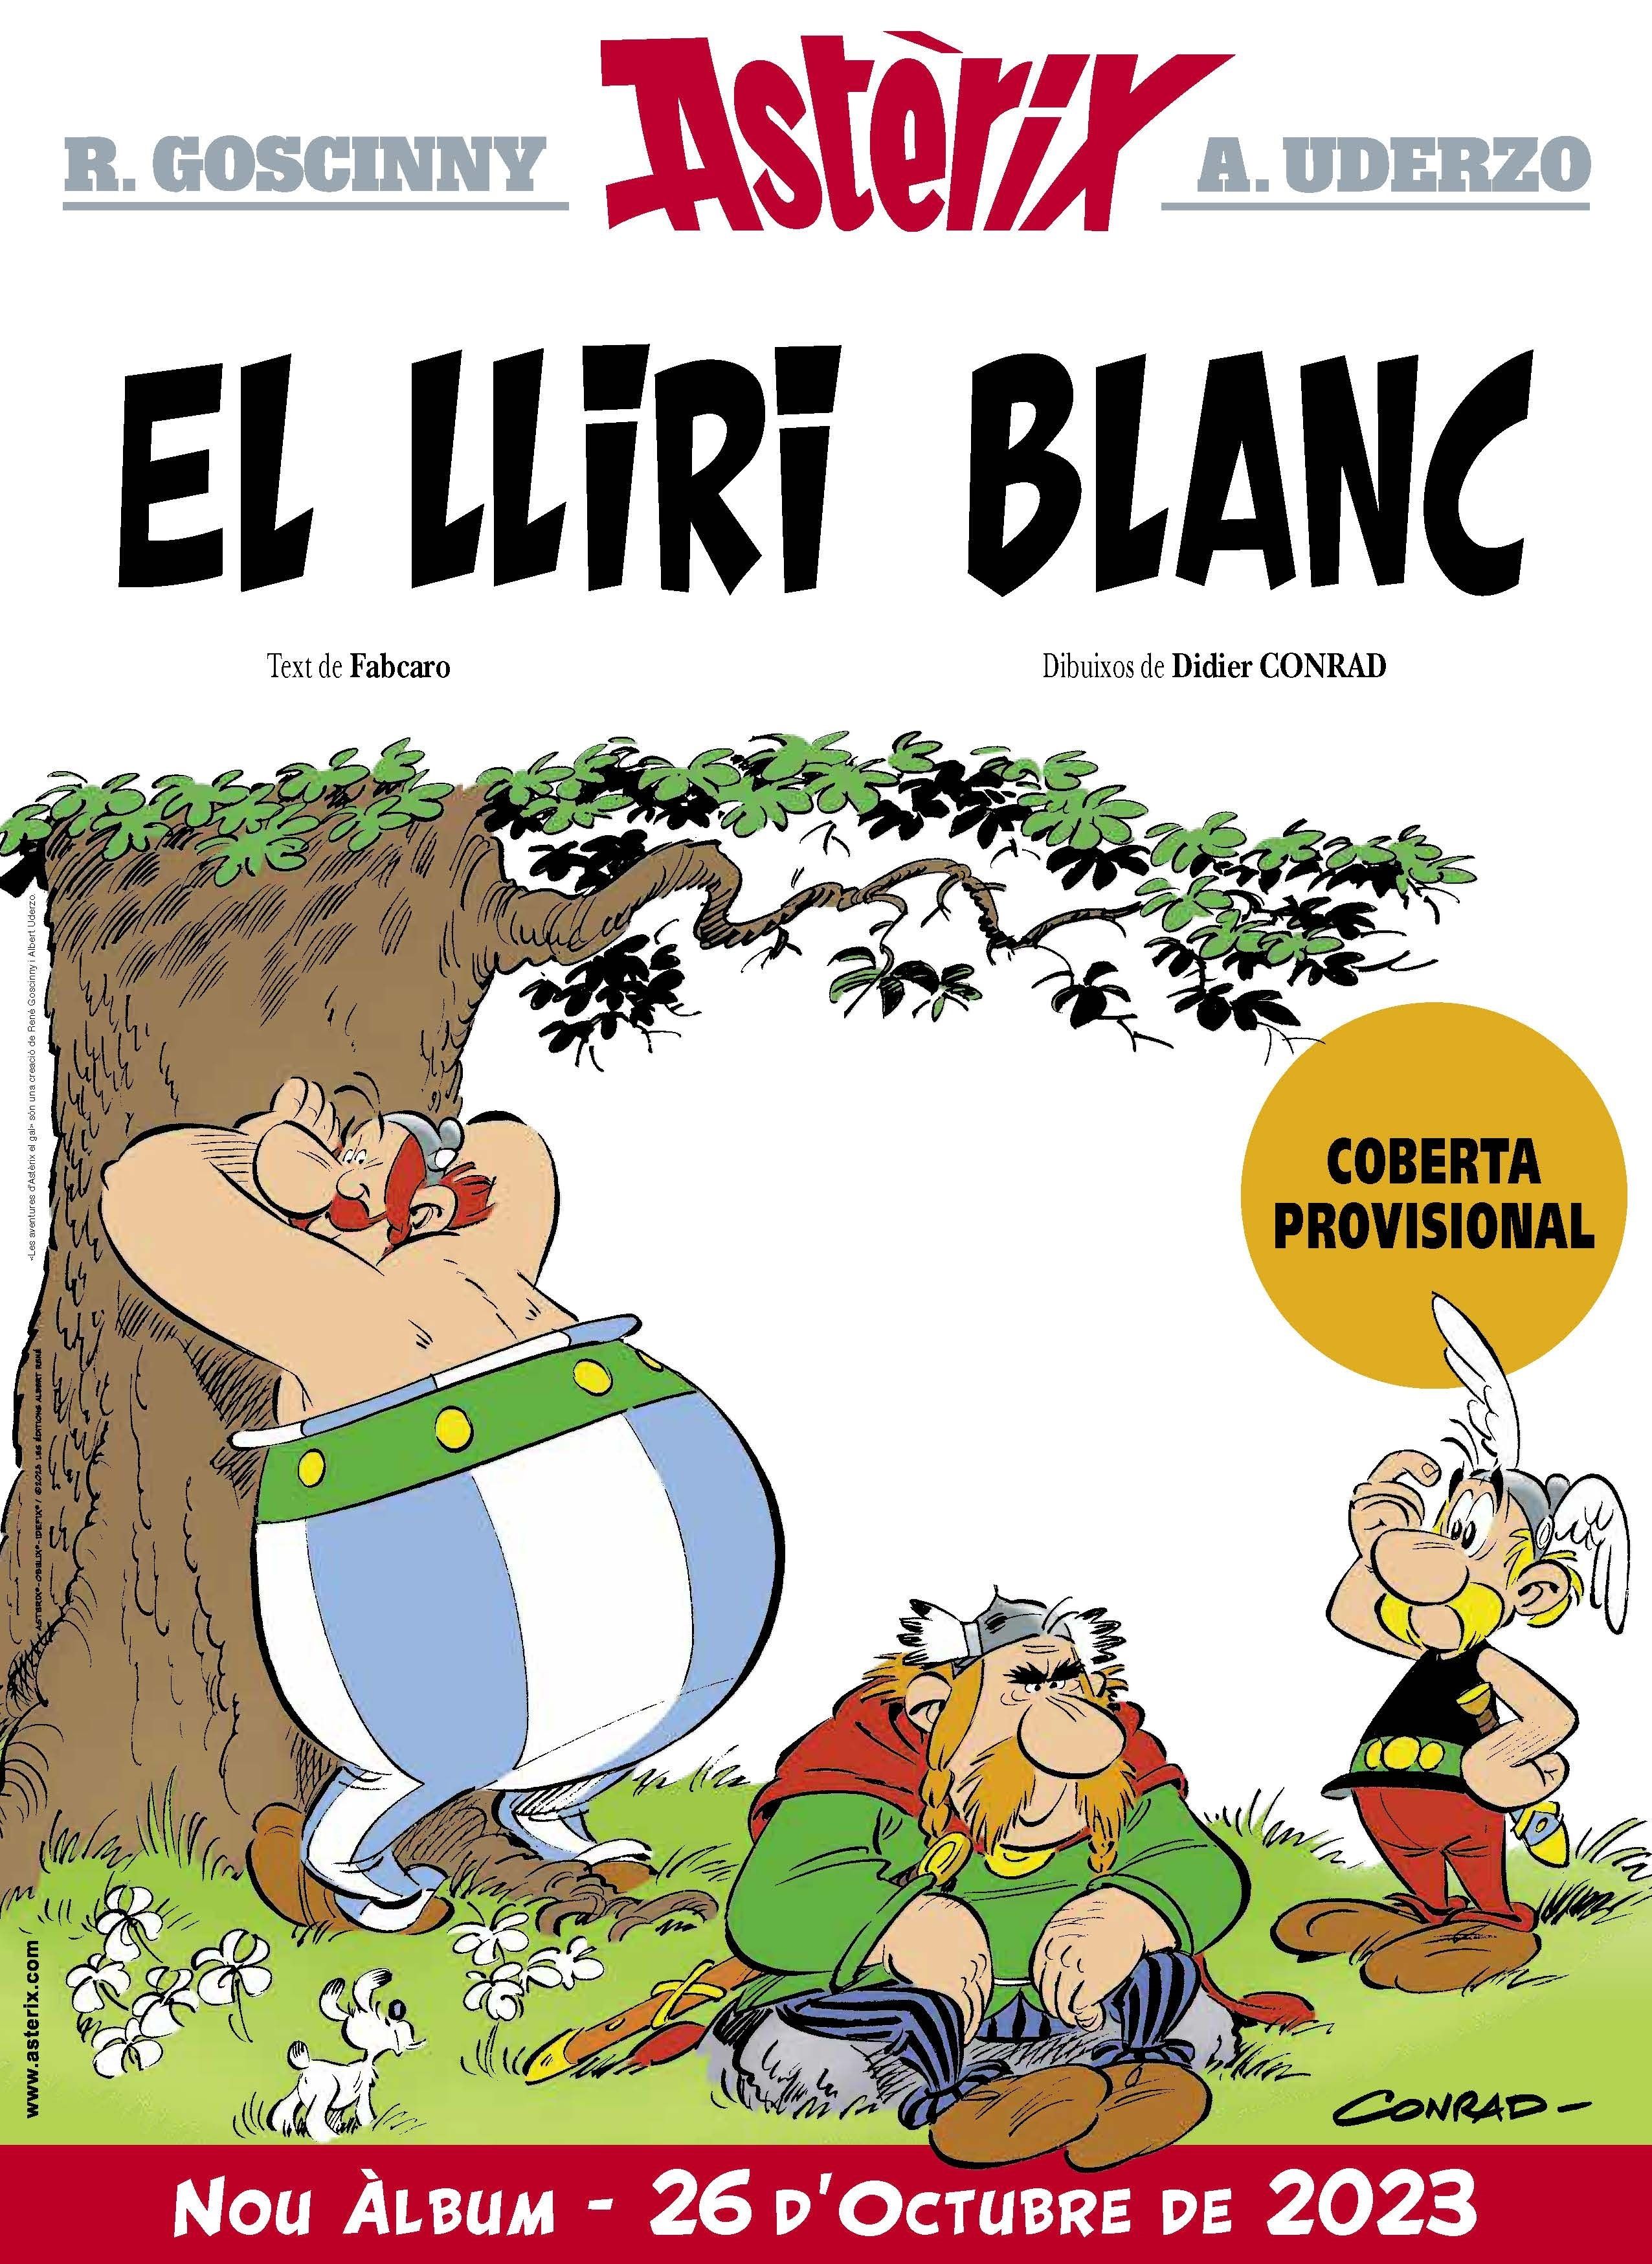 'El lirio blanco': el nuevo cómic de Astérix se publica el 26 de octubre